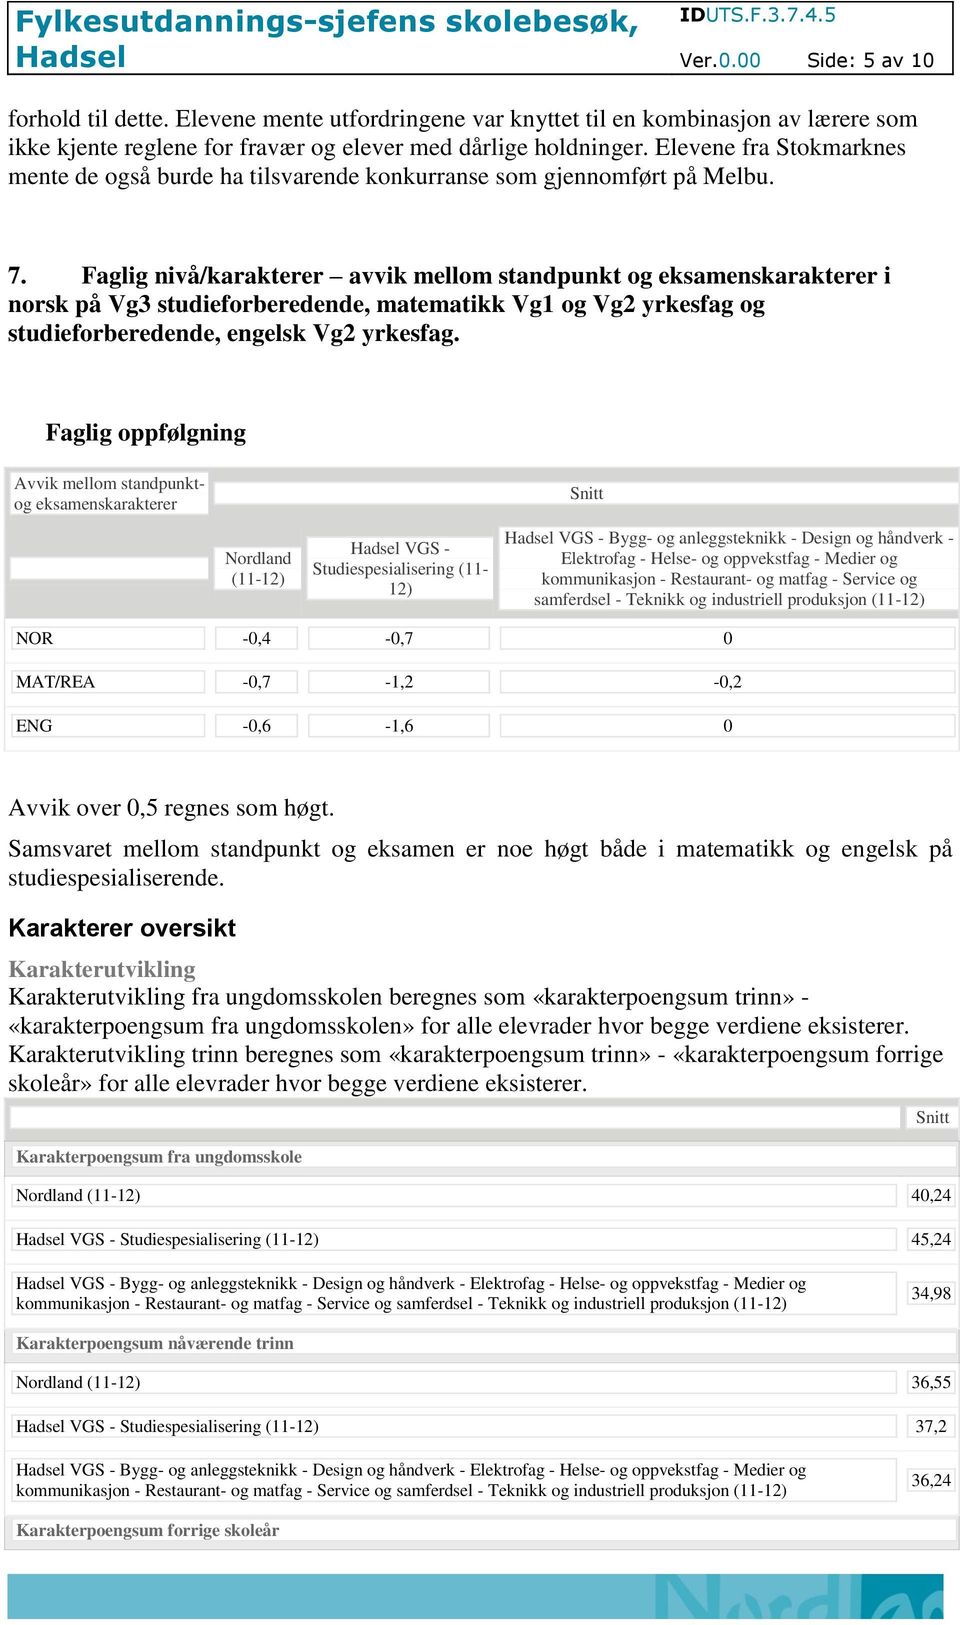 Faglig nivå/karakterer avvik mellom standpunkt og eksamenskarakterer i norsk på Vg3 studieforberedende, matematikk Vg1 og Vg2 yrkesfag og studieforberedende, engelsk Vg2 yrkesfag.